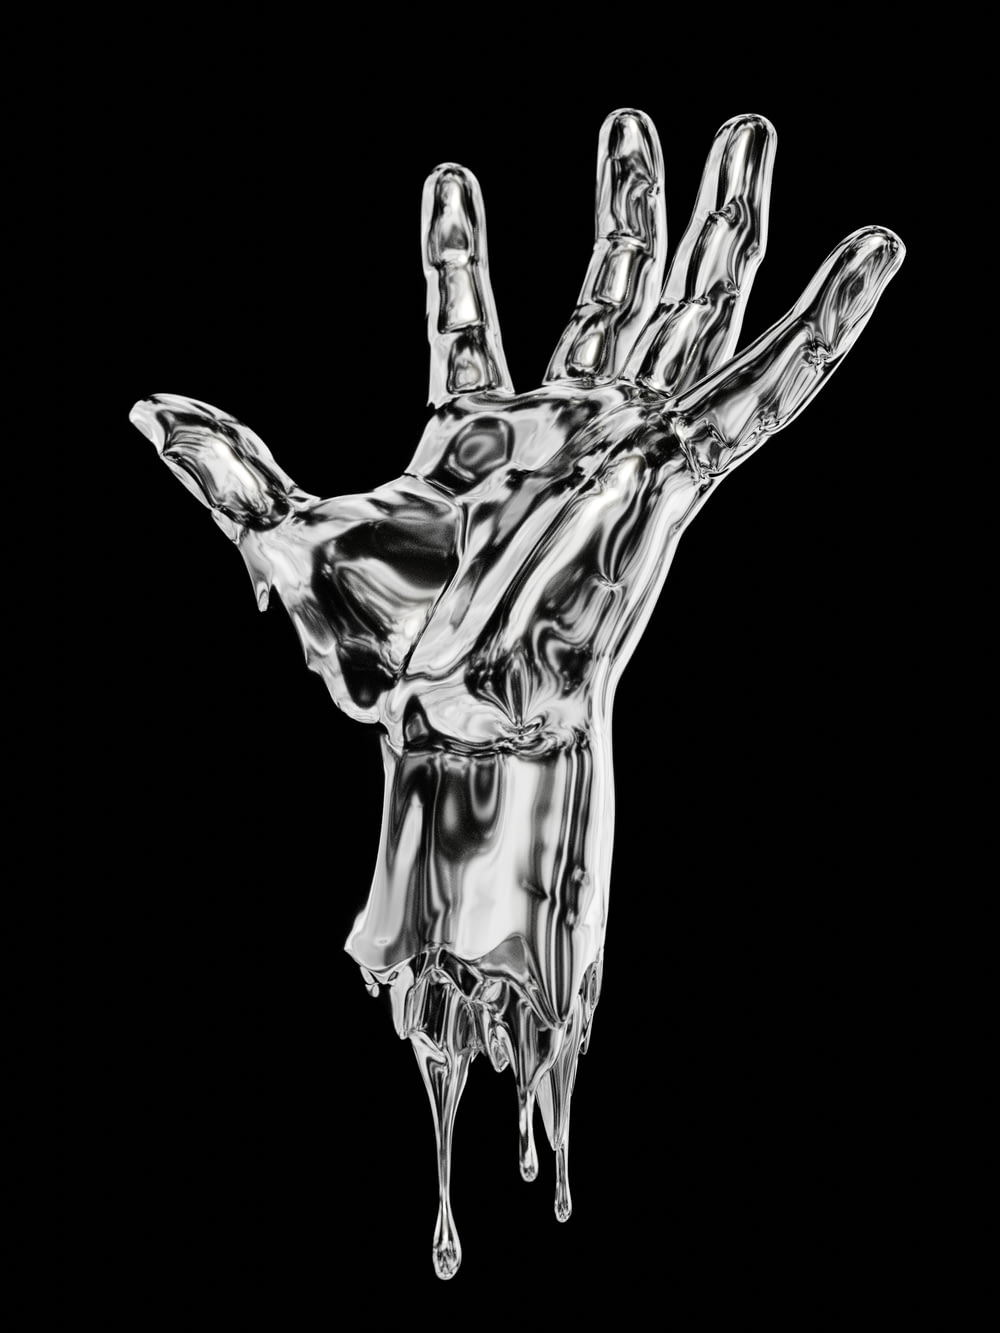 Ein Schwarz-Weiß-Foto einer tropfenden Hand